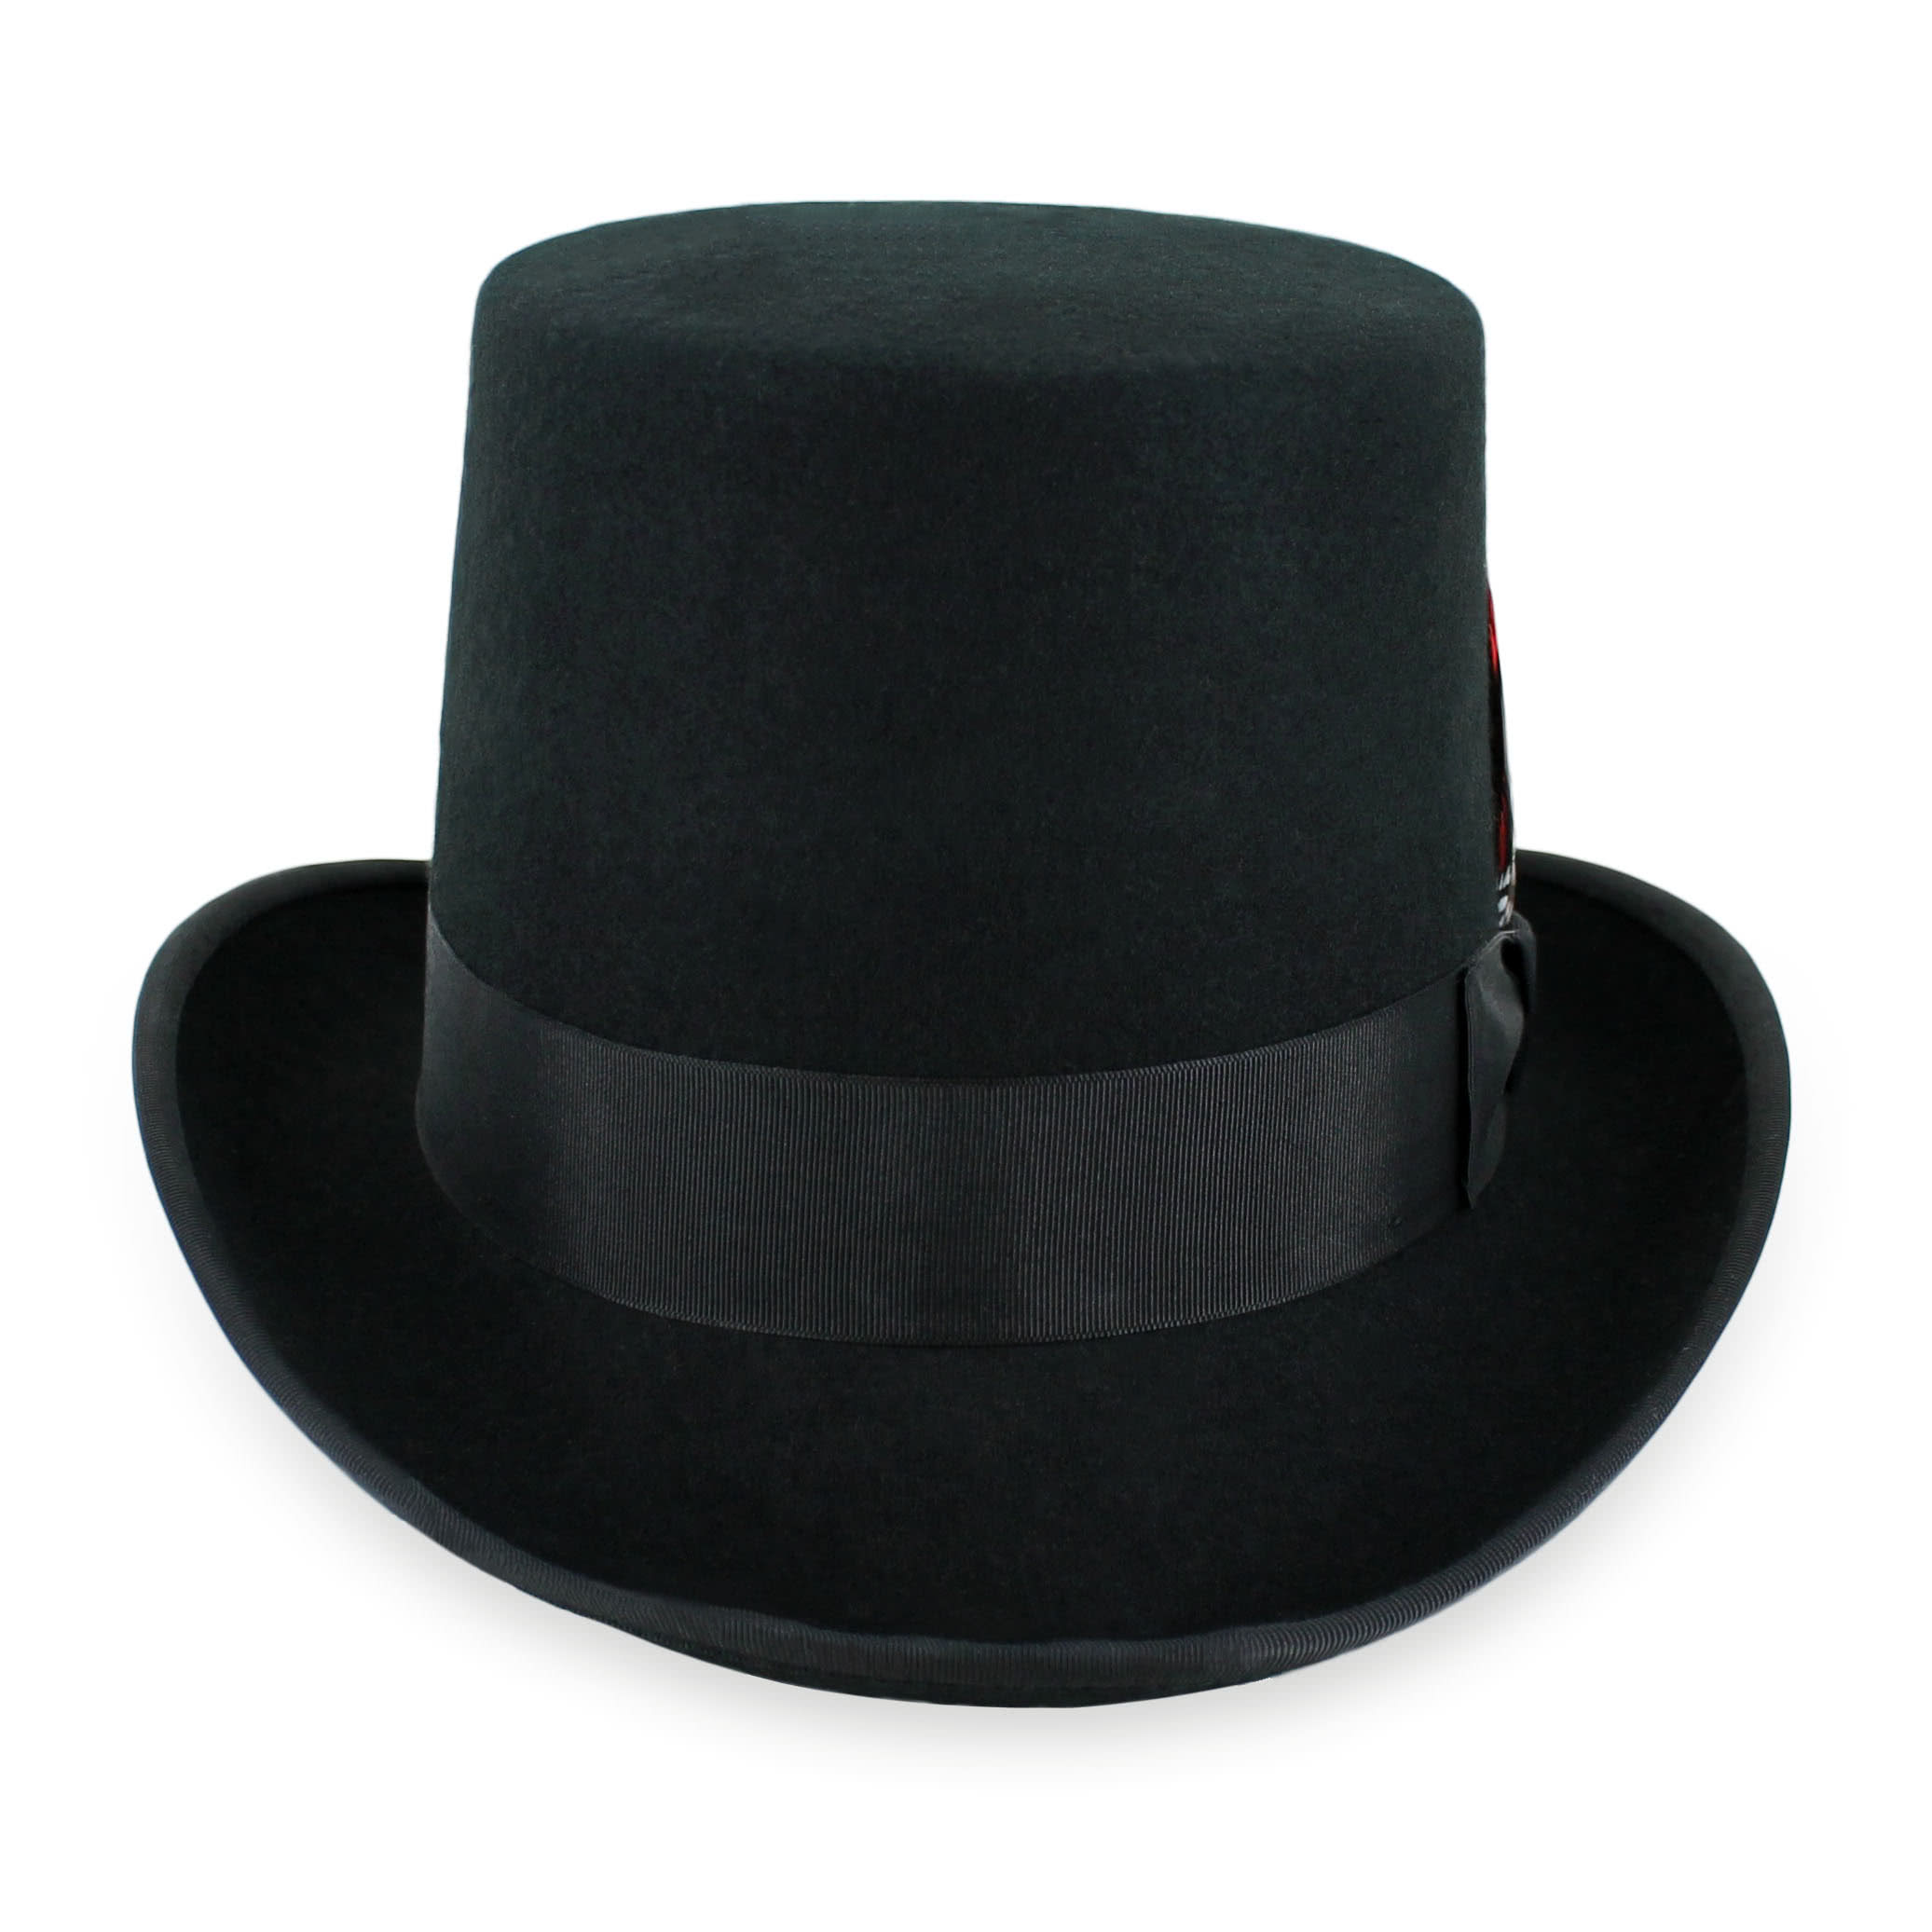 Men's Casual & Formal Hats & Caps - The Goods - Hats in the Belfry